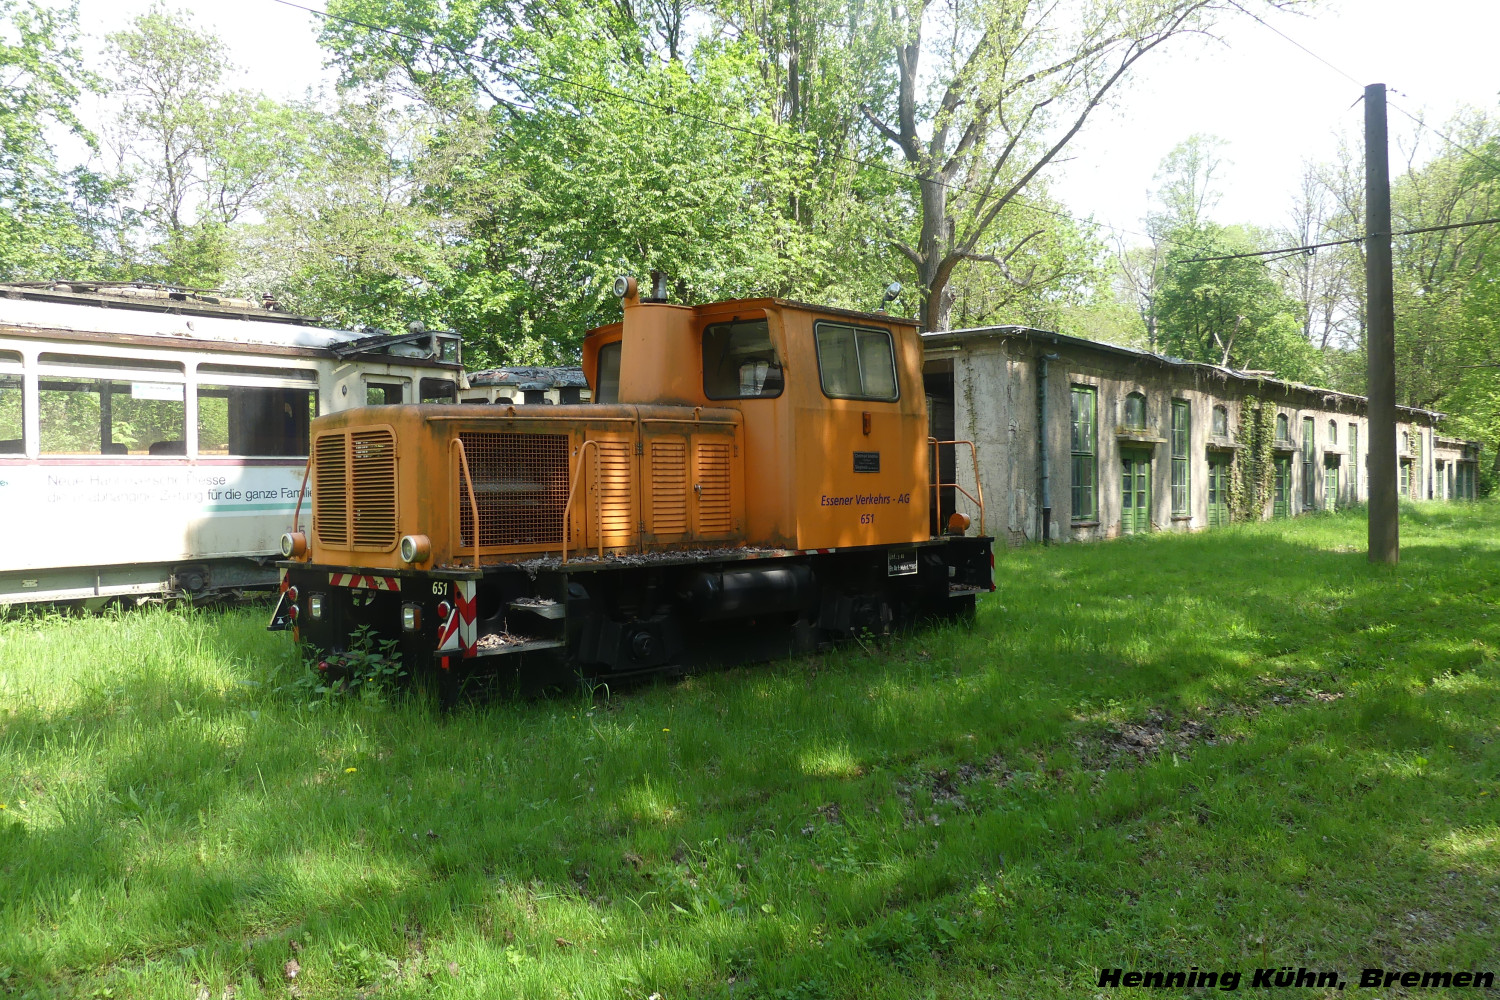 2-axle service Locomotive #651